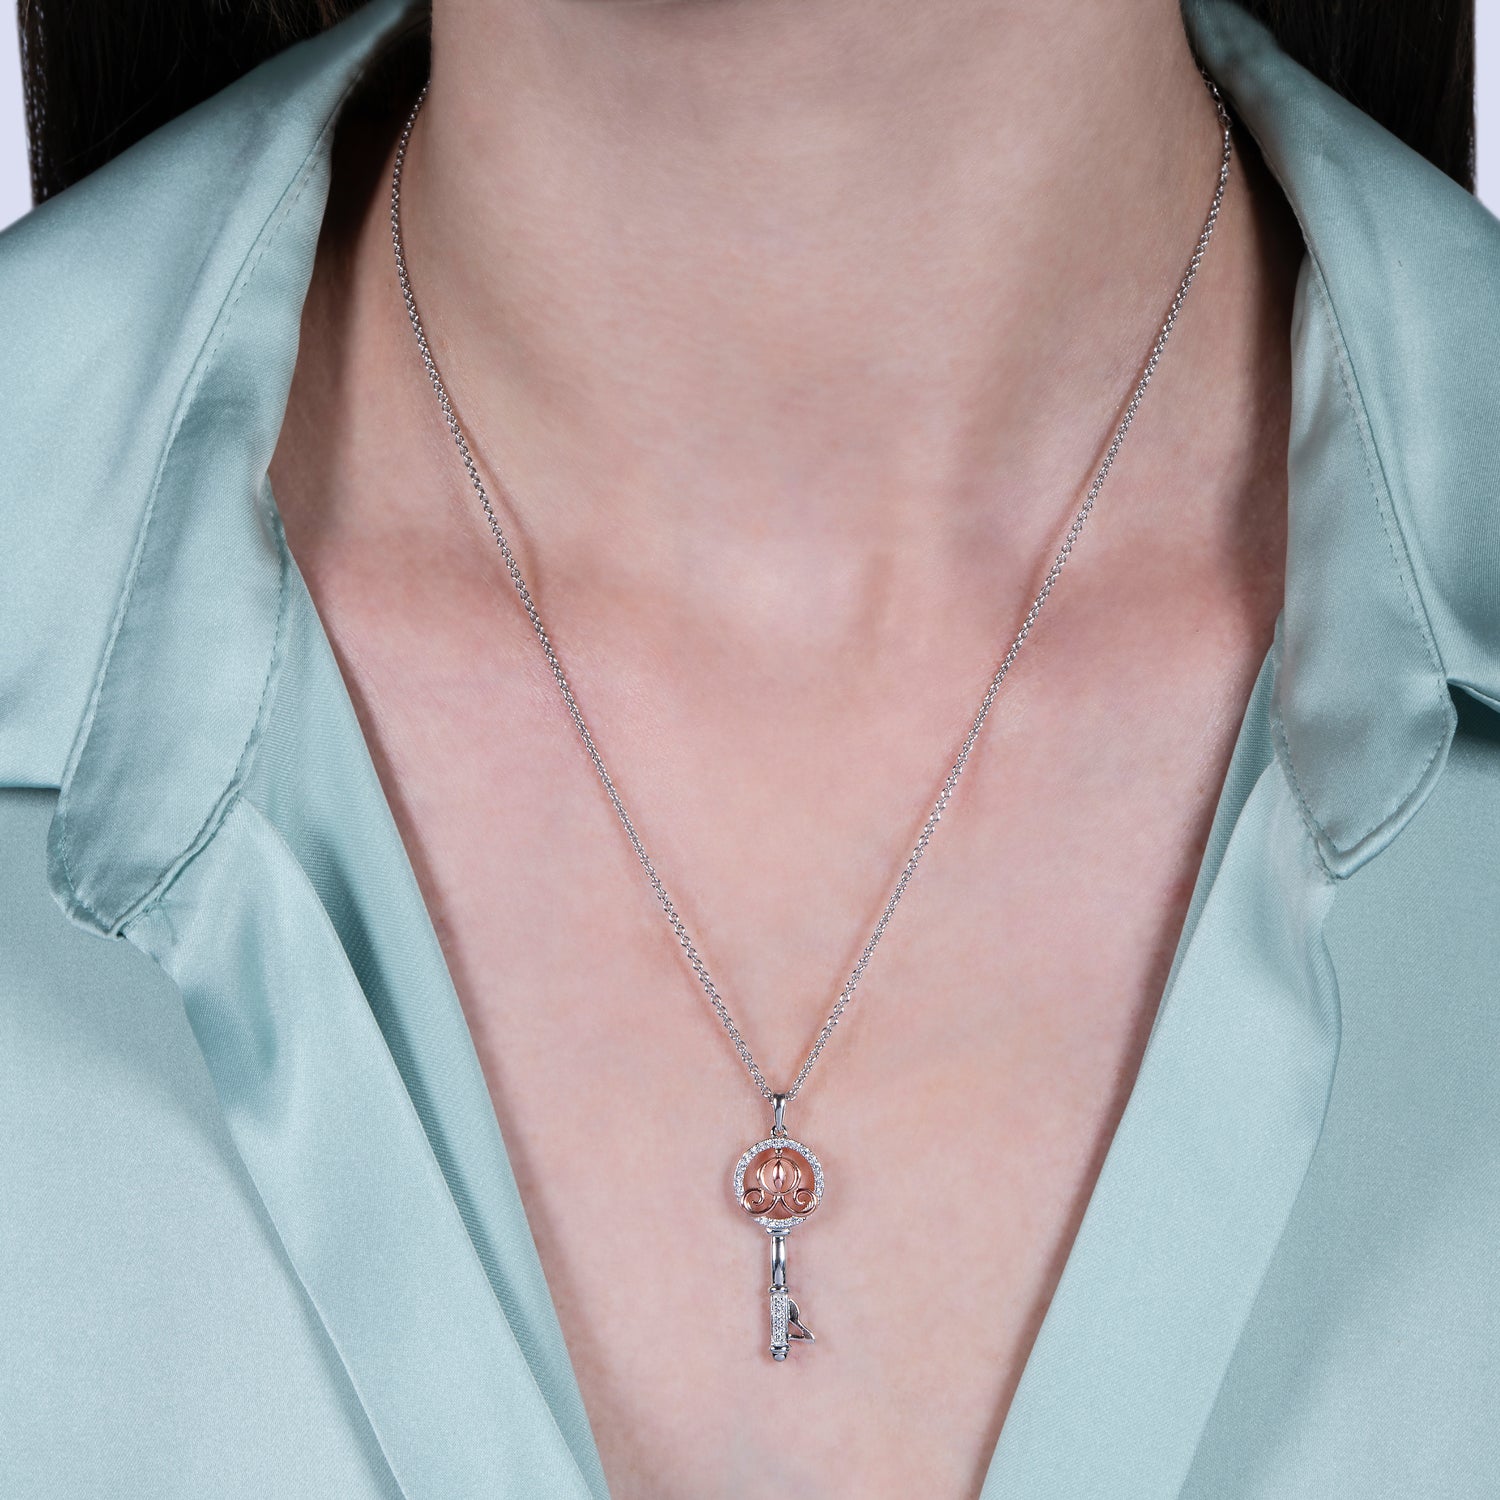 VERONA. Skeleton Key Necklace - Silver – REGALROSE